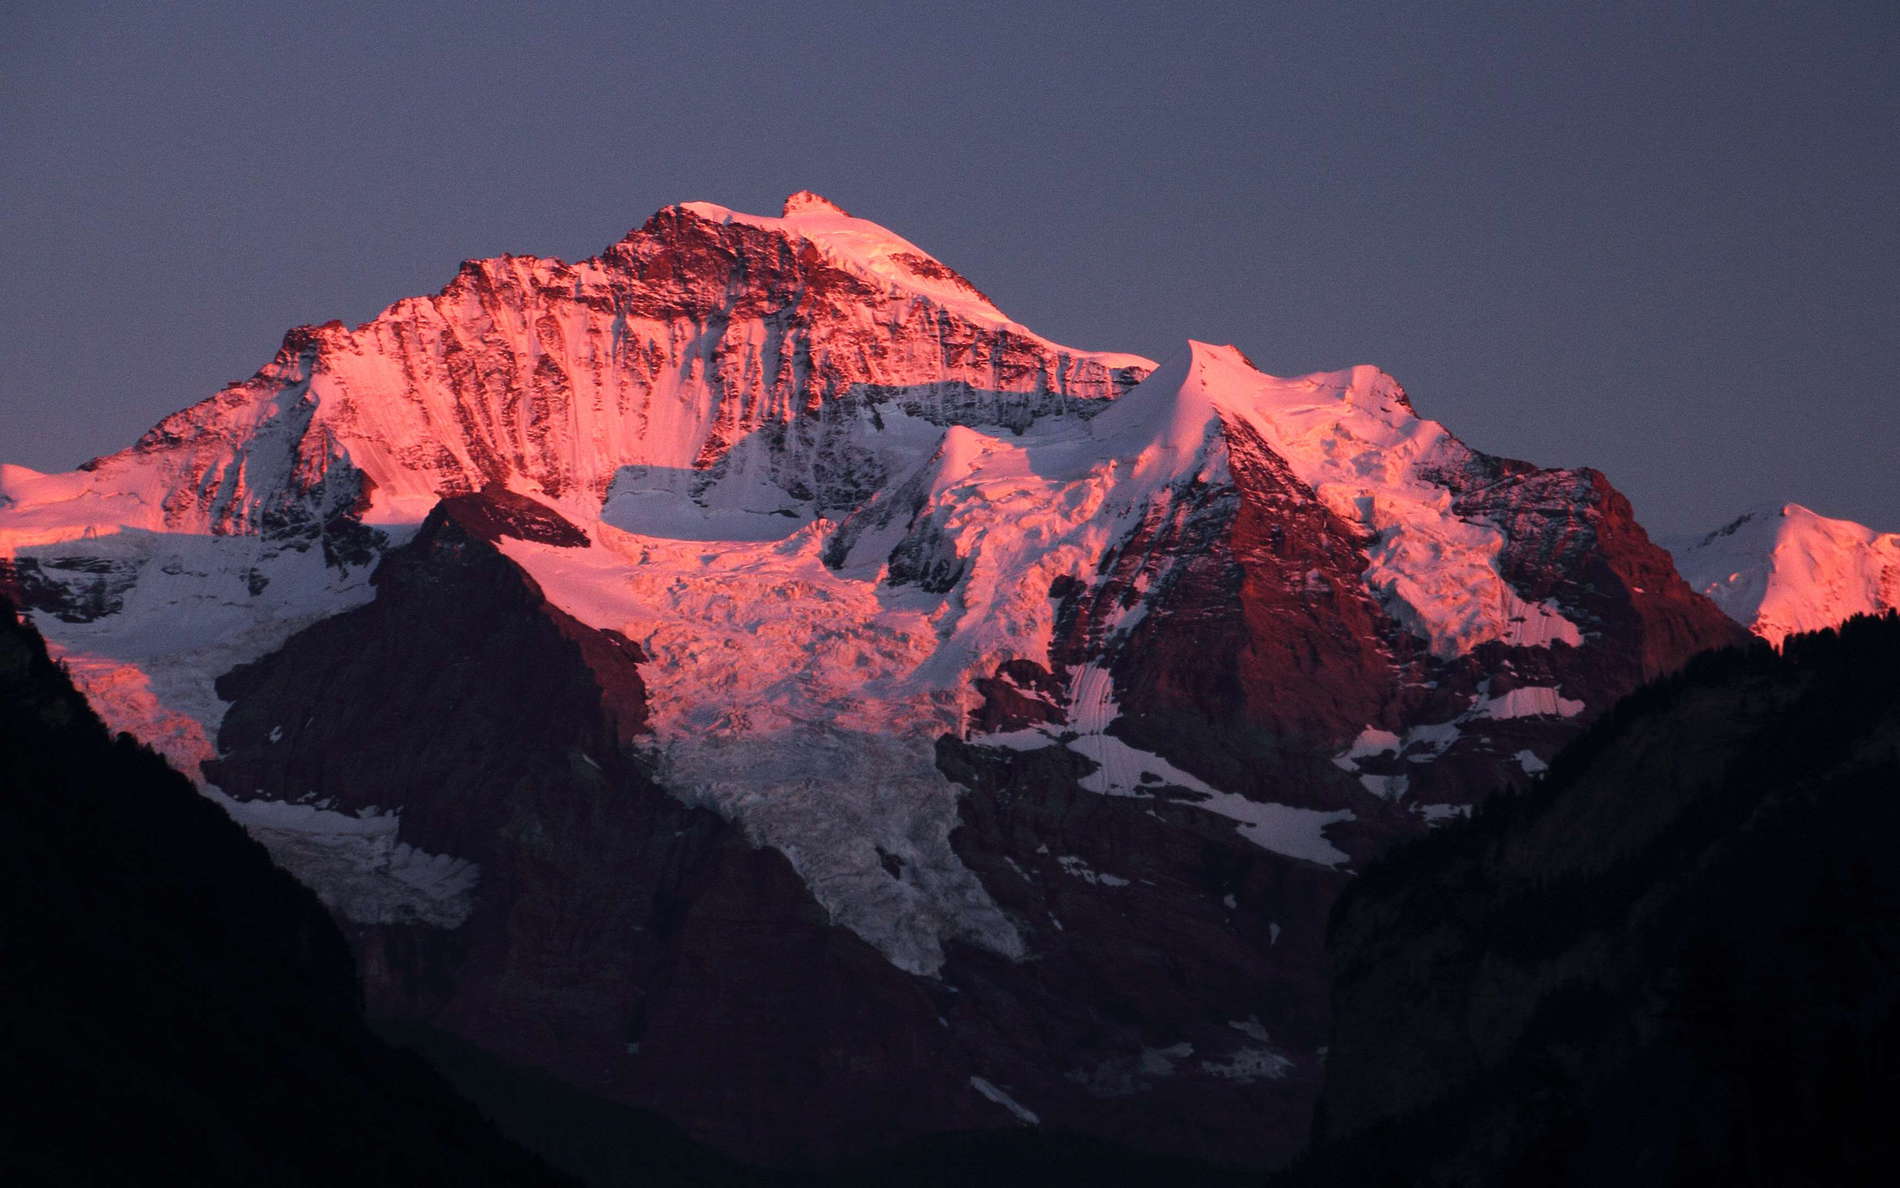 Jungfrau at sunset